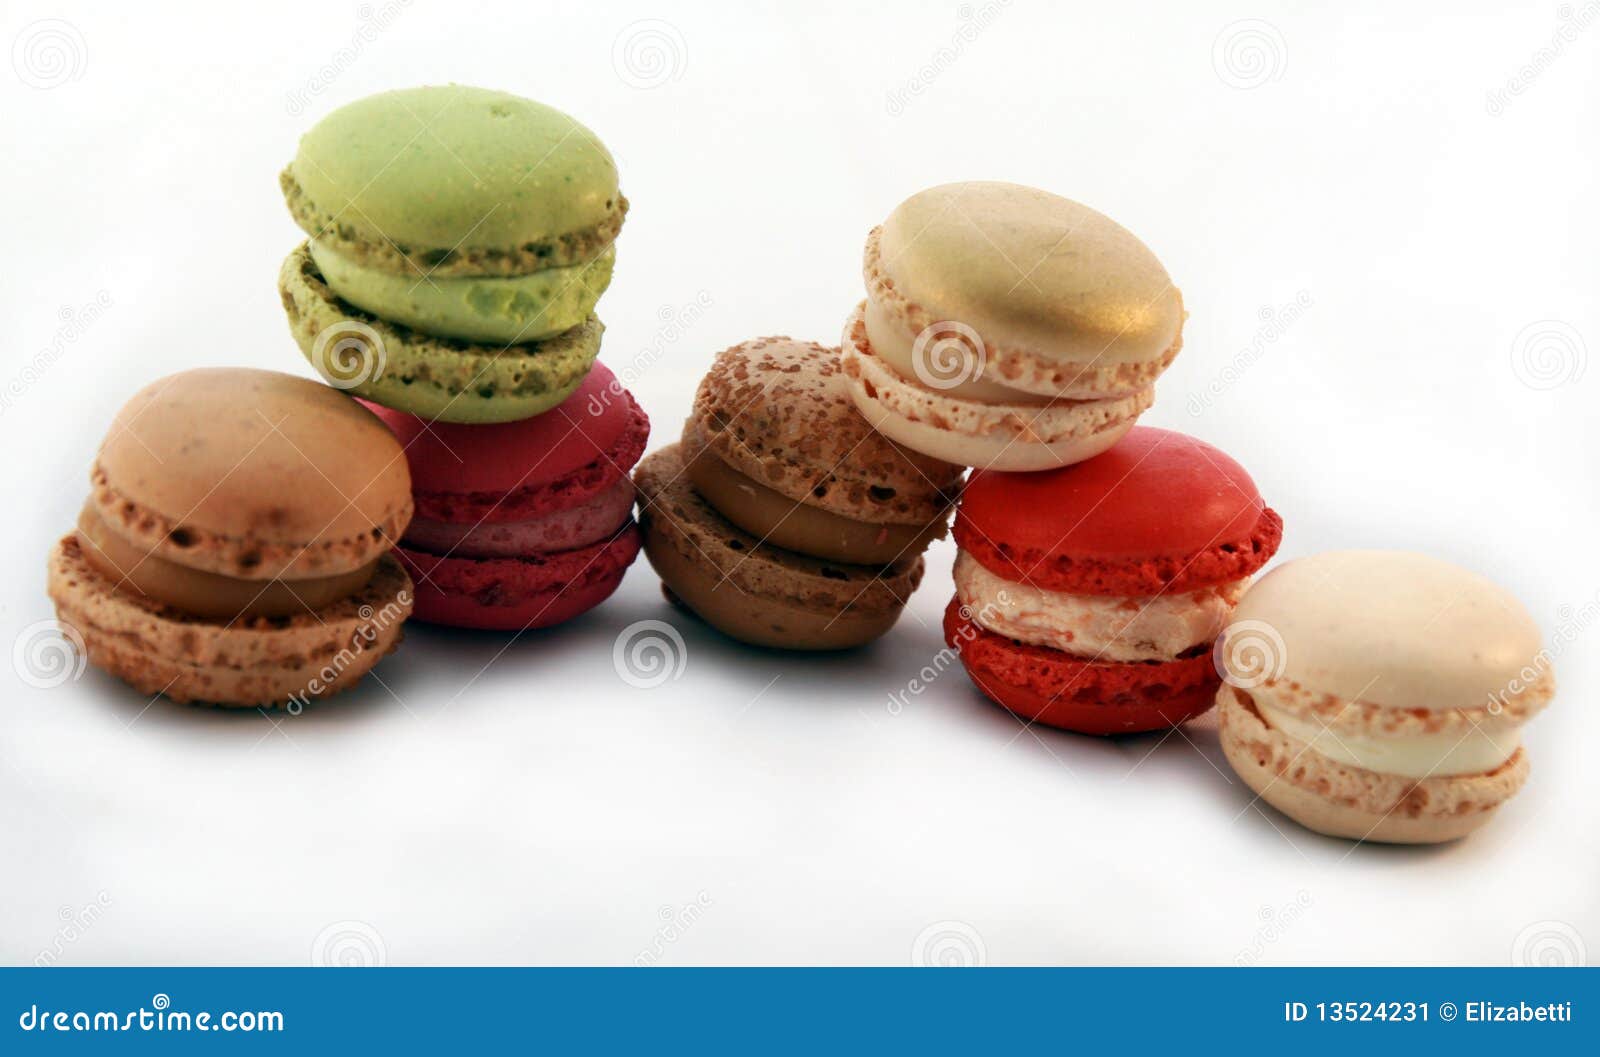 Luxemburgerli stock image. Image of bakery, descriptive - 13524231